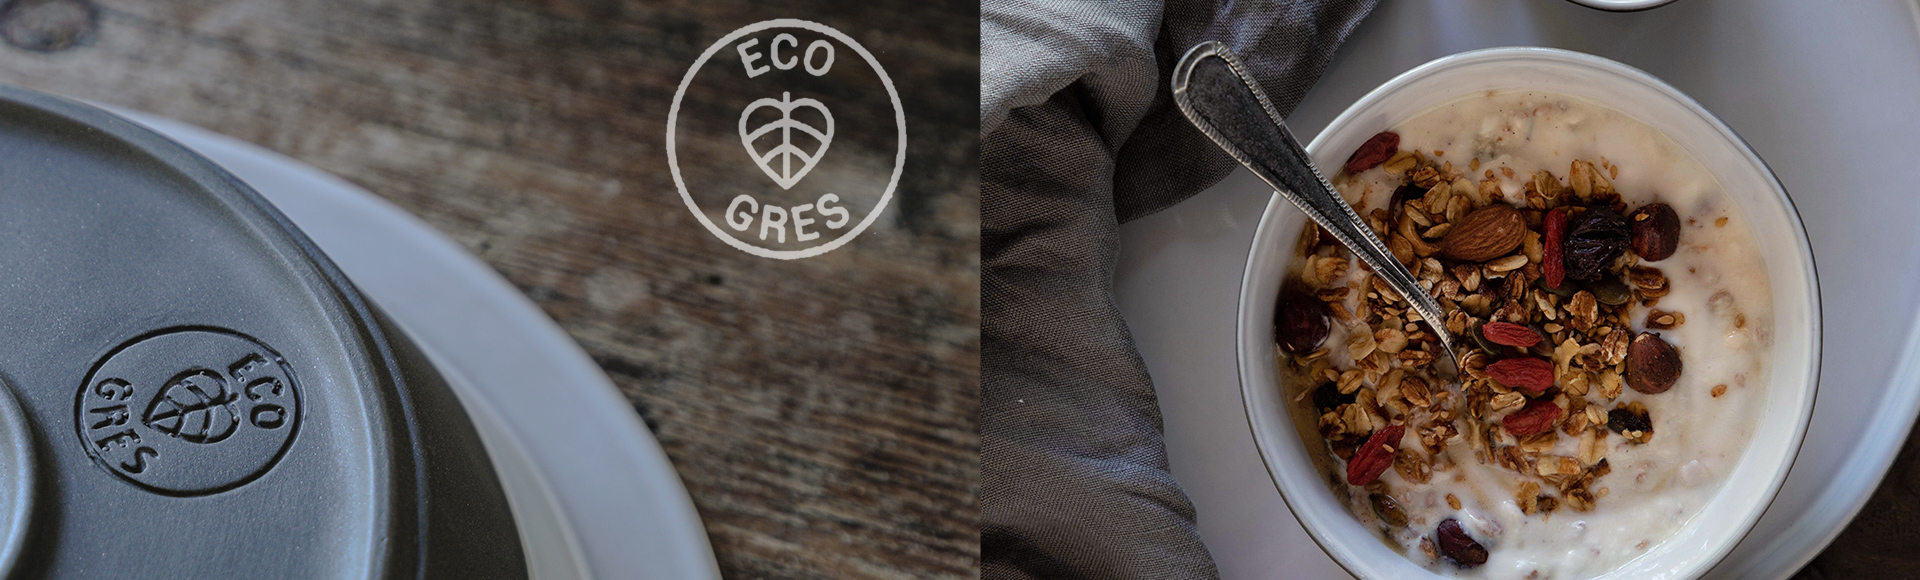 製造過程で廃棄されていた原料をリサイクルして出来上がったCOSTANOVAオリジナルのリサイクル陶土ECO　GRESを使ったリサイクル製品は、黒い素地のマットな質感が魅力です。